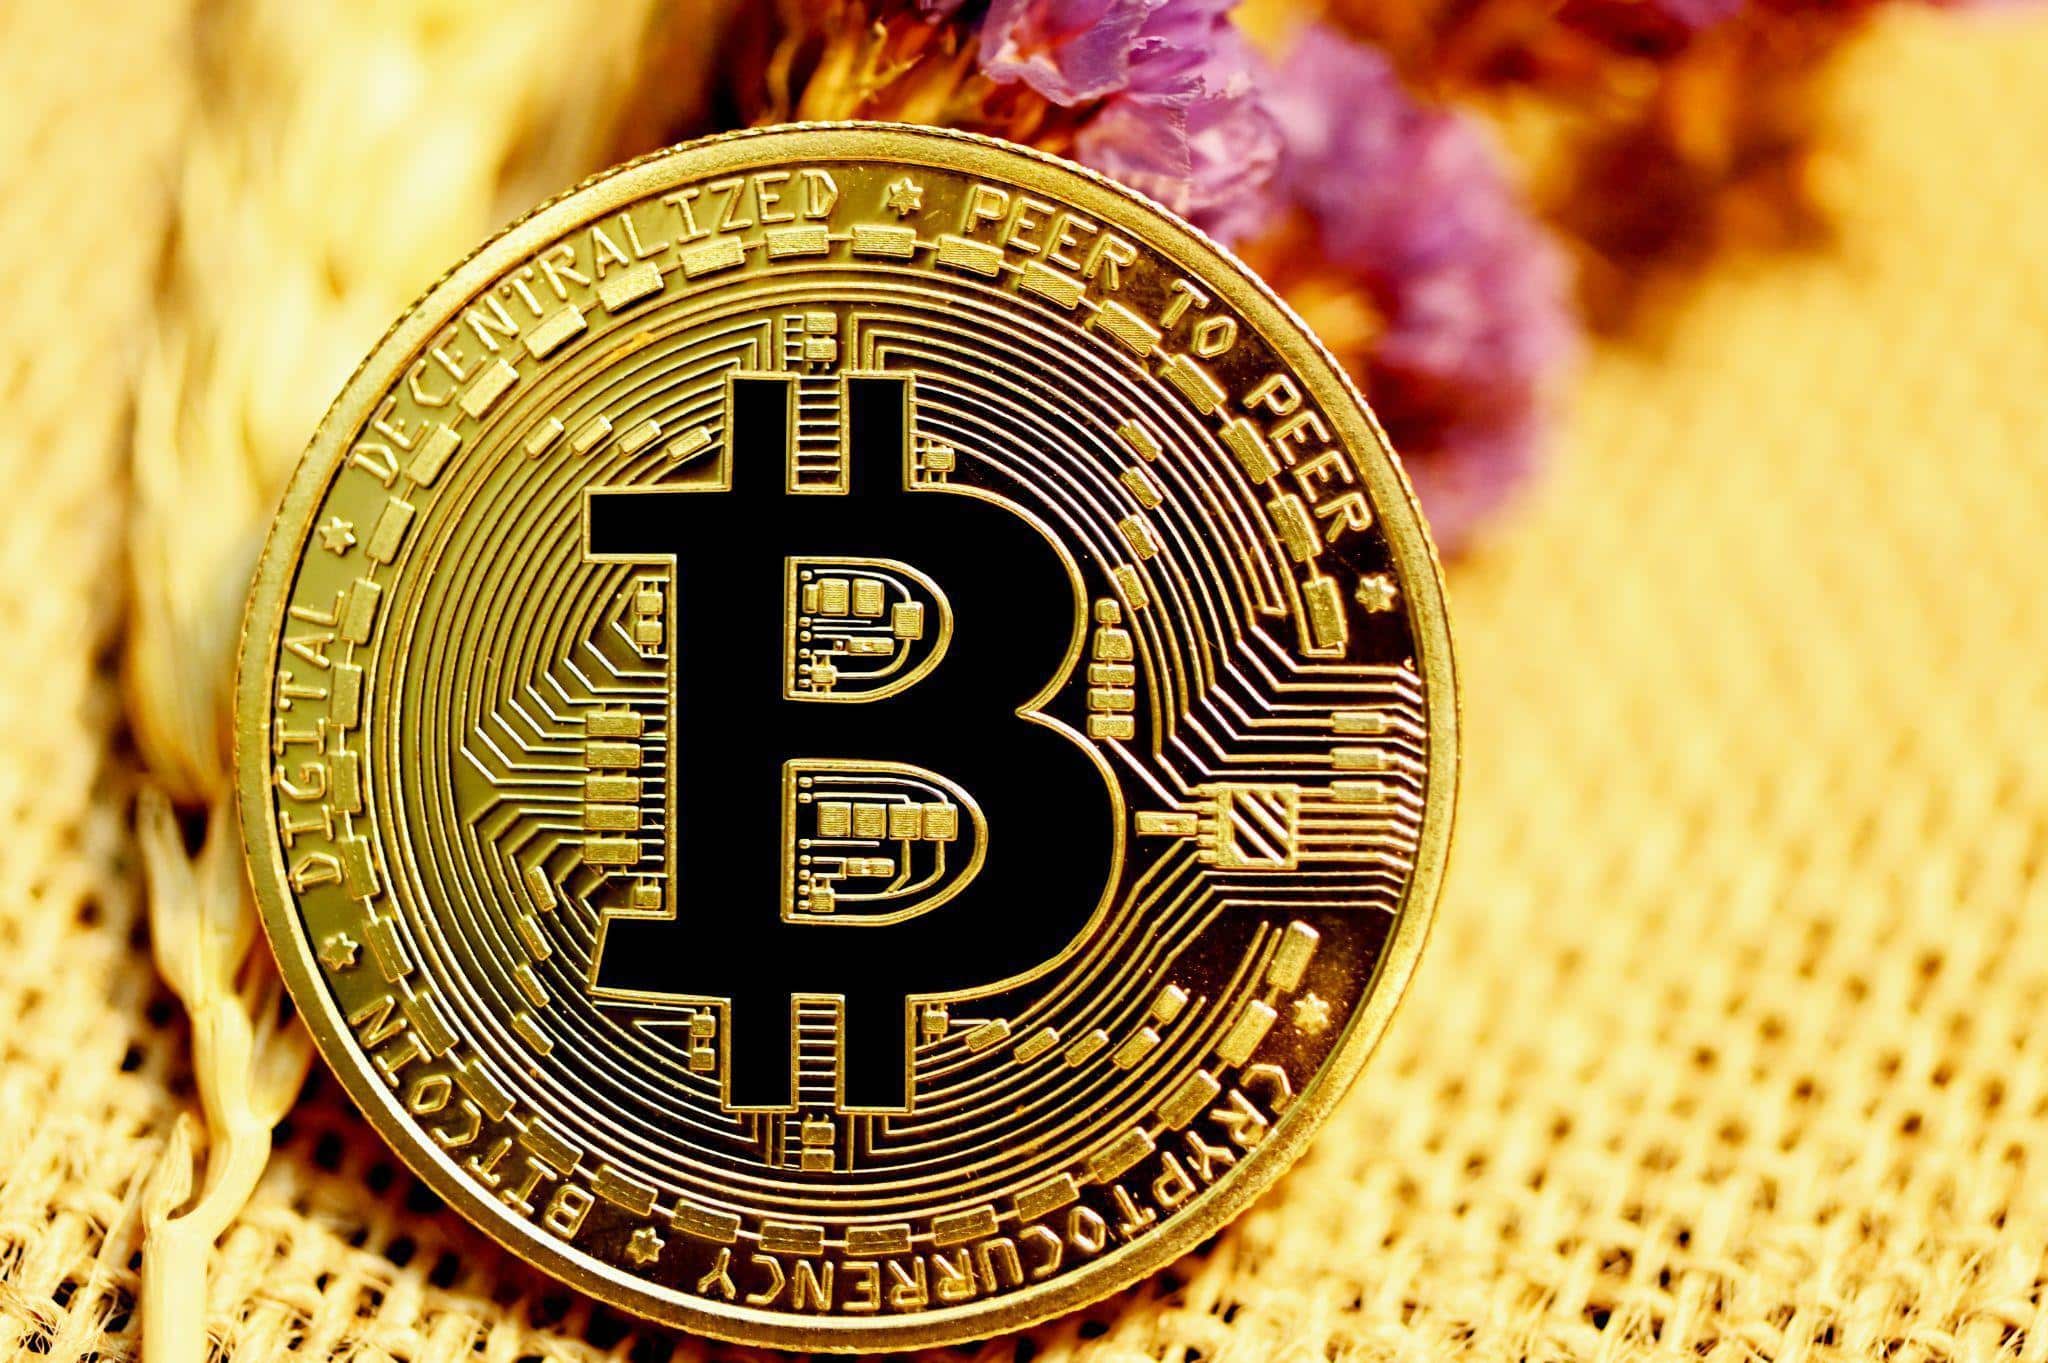 Image of a bitcoin token